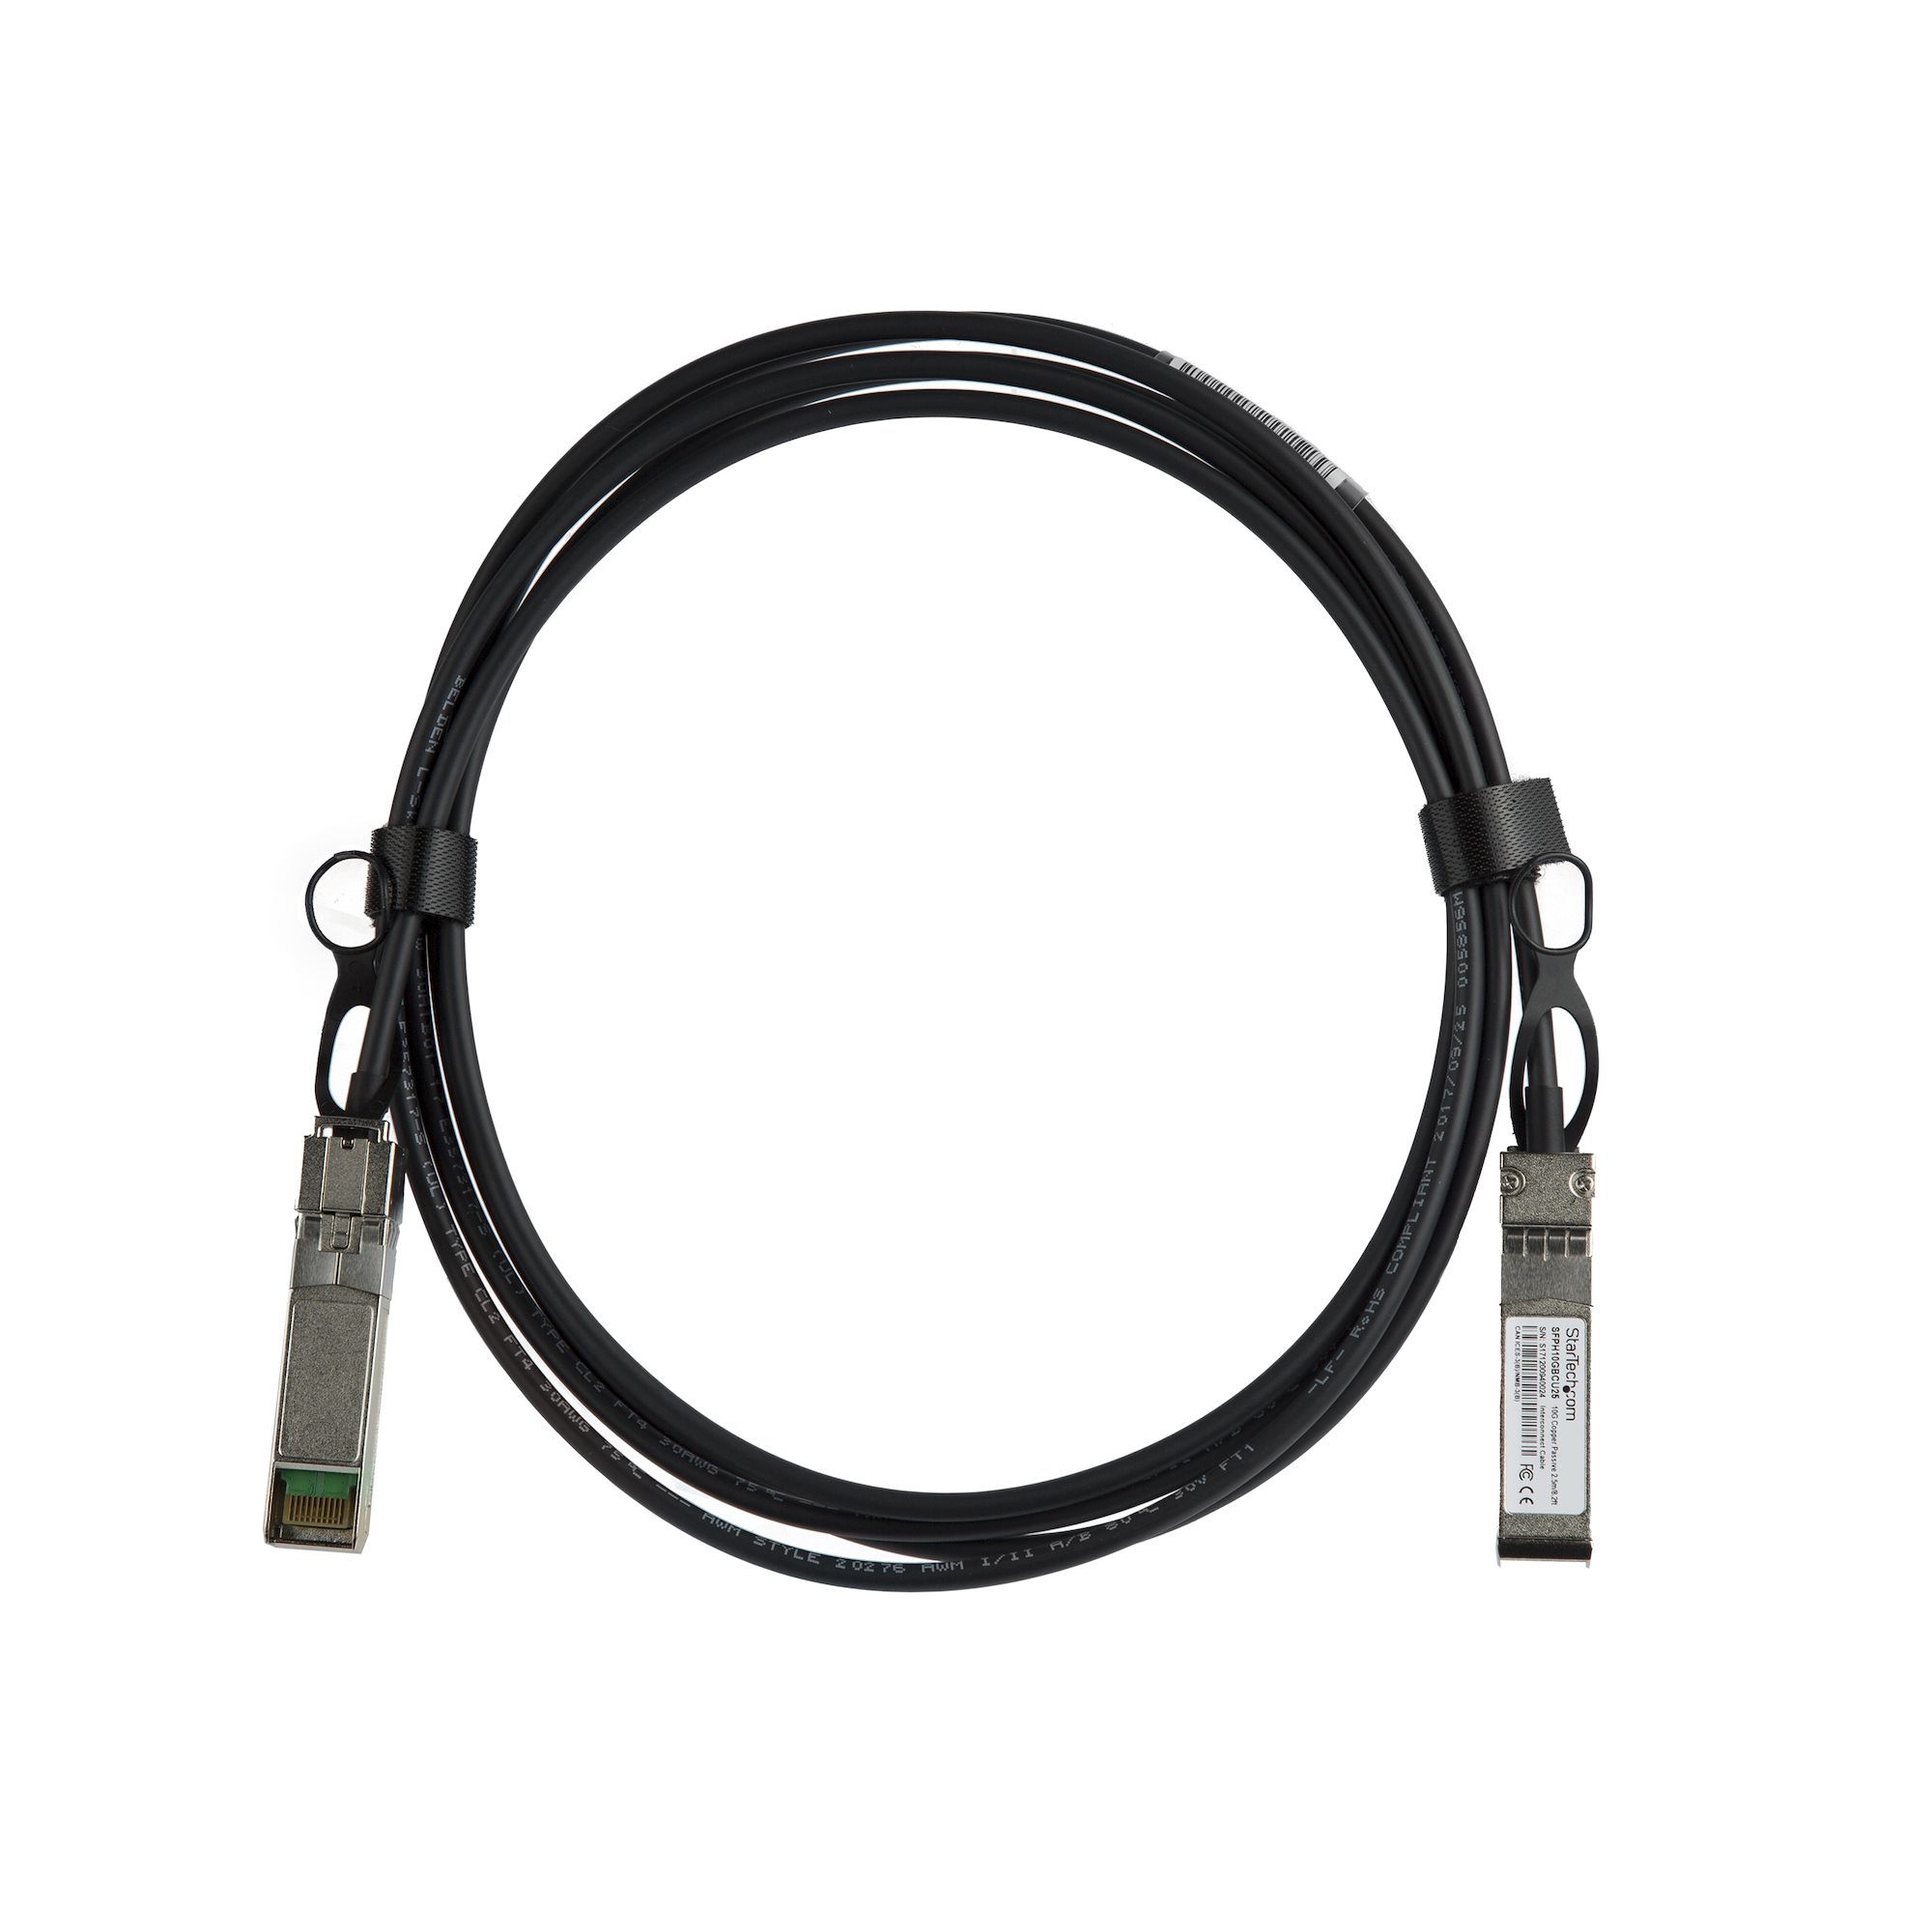 DAC Twinax ケーブル 2m MSAアンコード 銅線ダイレクトアタッチケーブル MSA準拠スイッチ対応 QSFPMM2M - 3